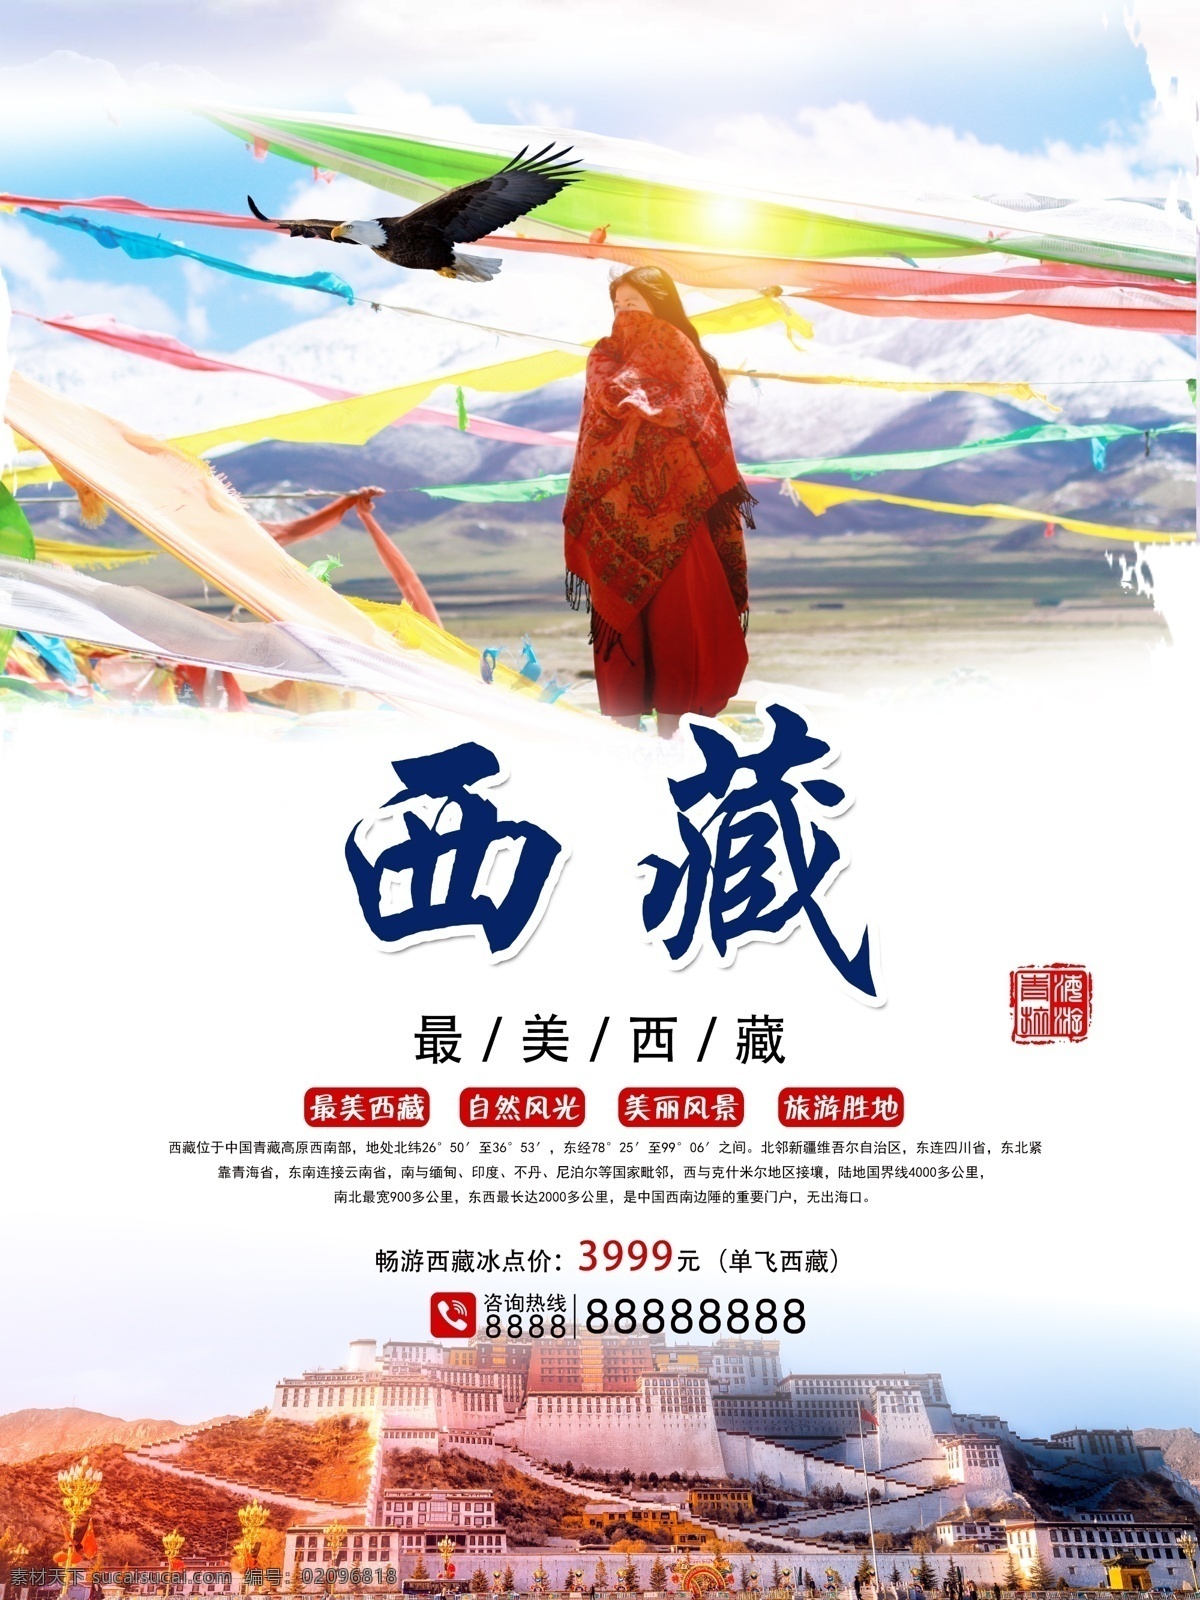 蓝色 白云 西藏旅游 海报 免费素材 平面素材 海报模板 西藏 旅游 布达拉宫 转经轮 印象 朝圣者 最美拉萨 达赖喇嘛 佛教圣地